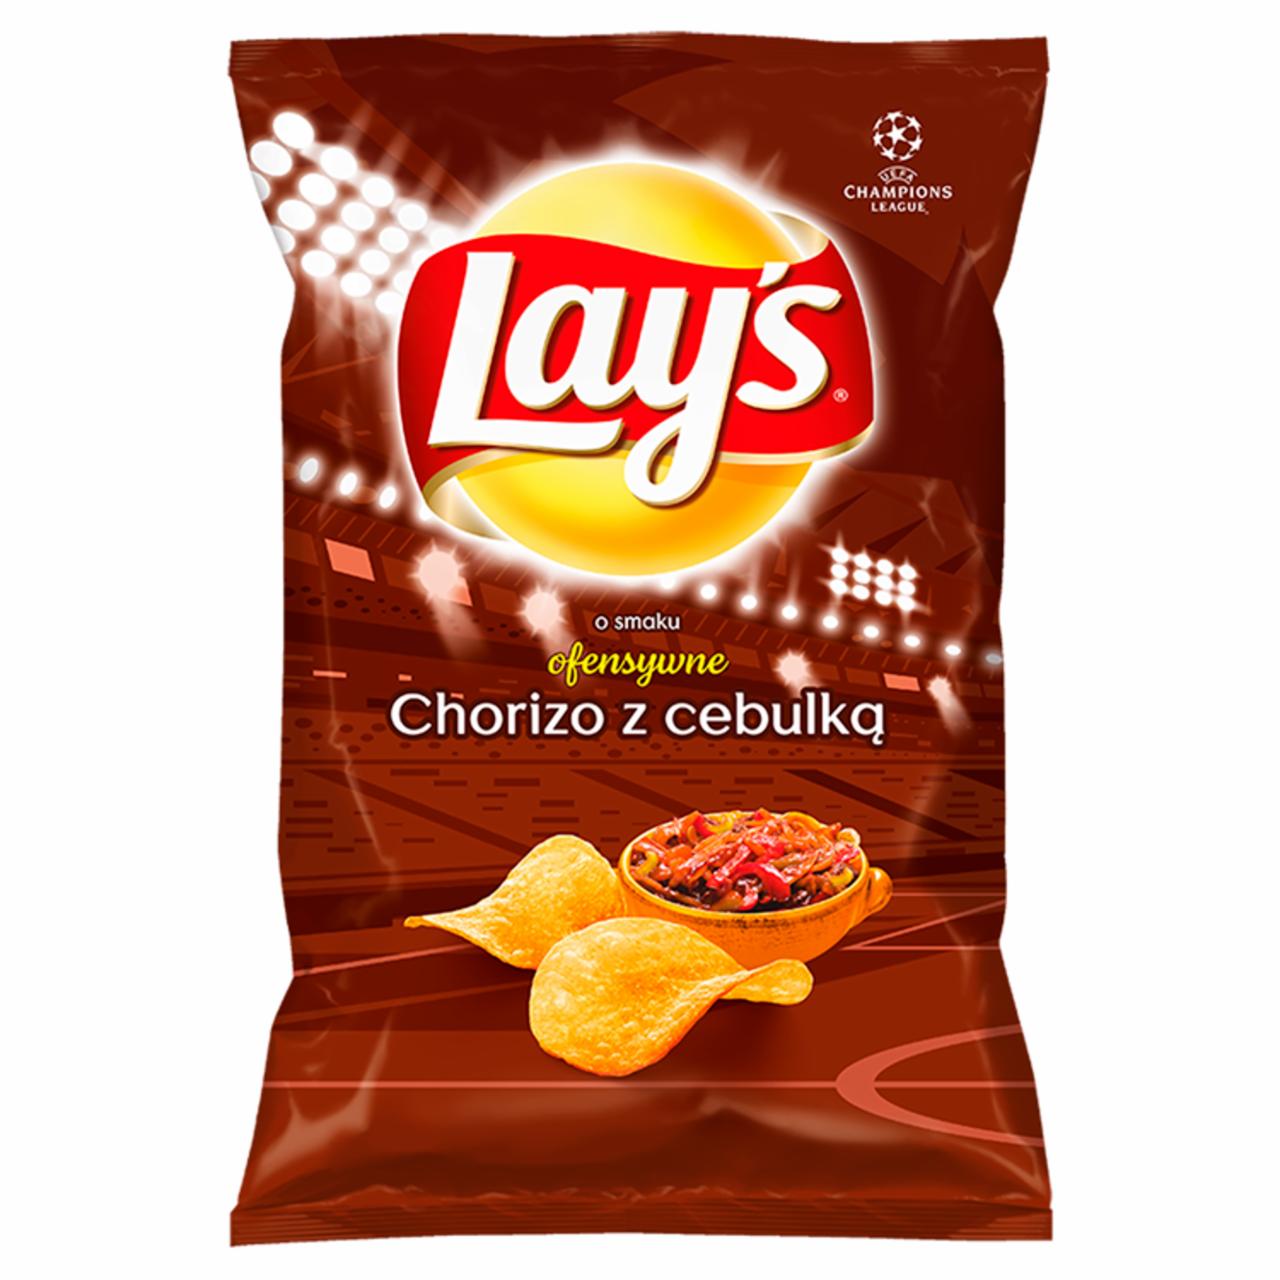 Zdjęcia - Lay's Chipsy ziemniaczane o smaku chorizo z cebulką 140 g